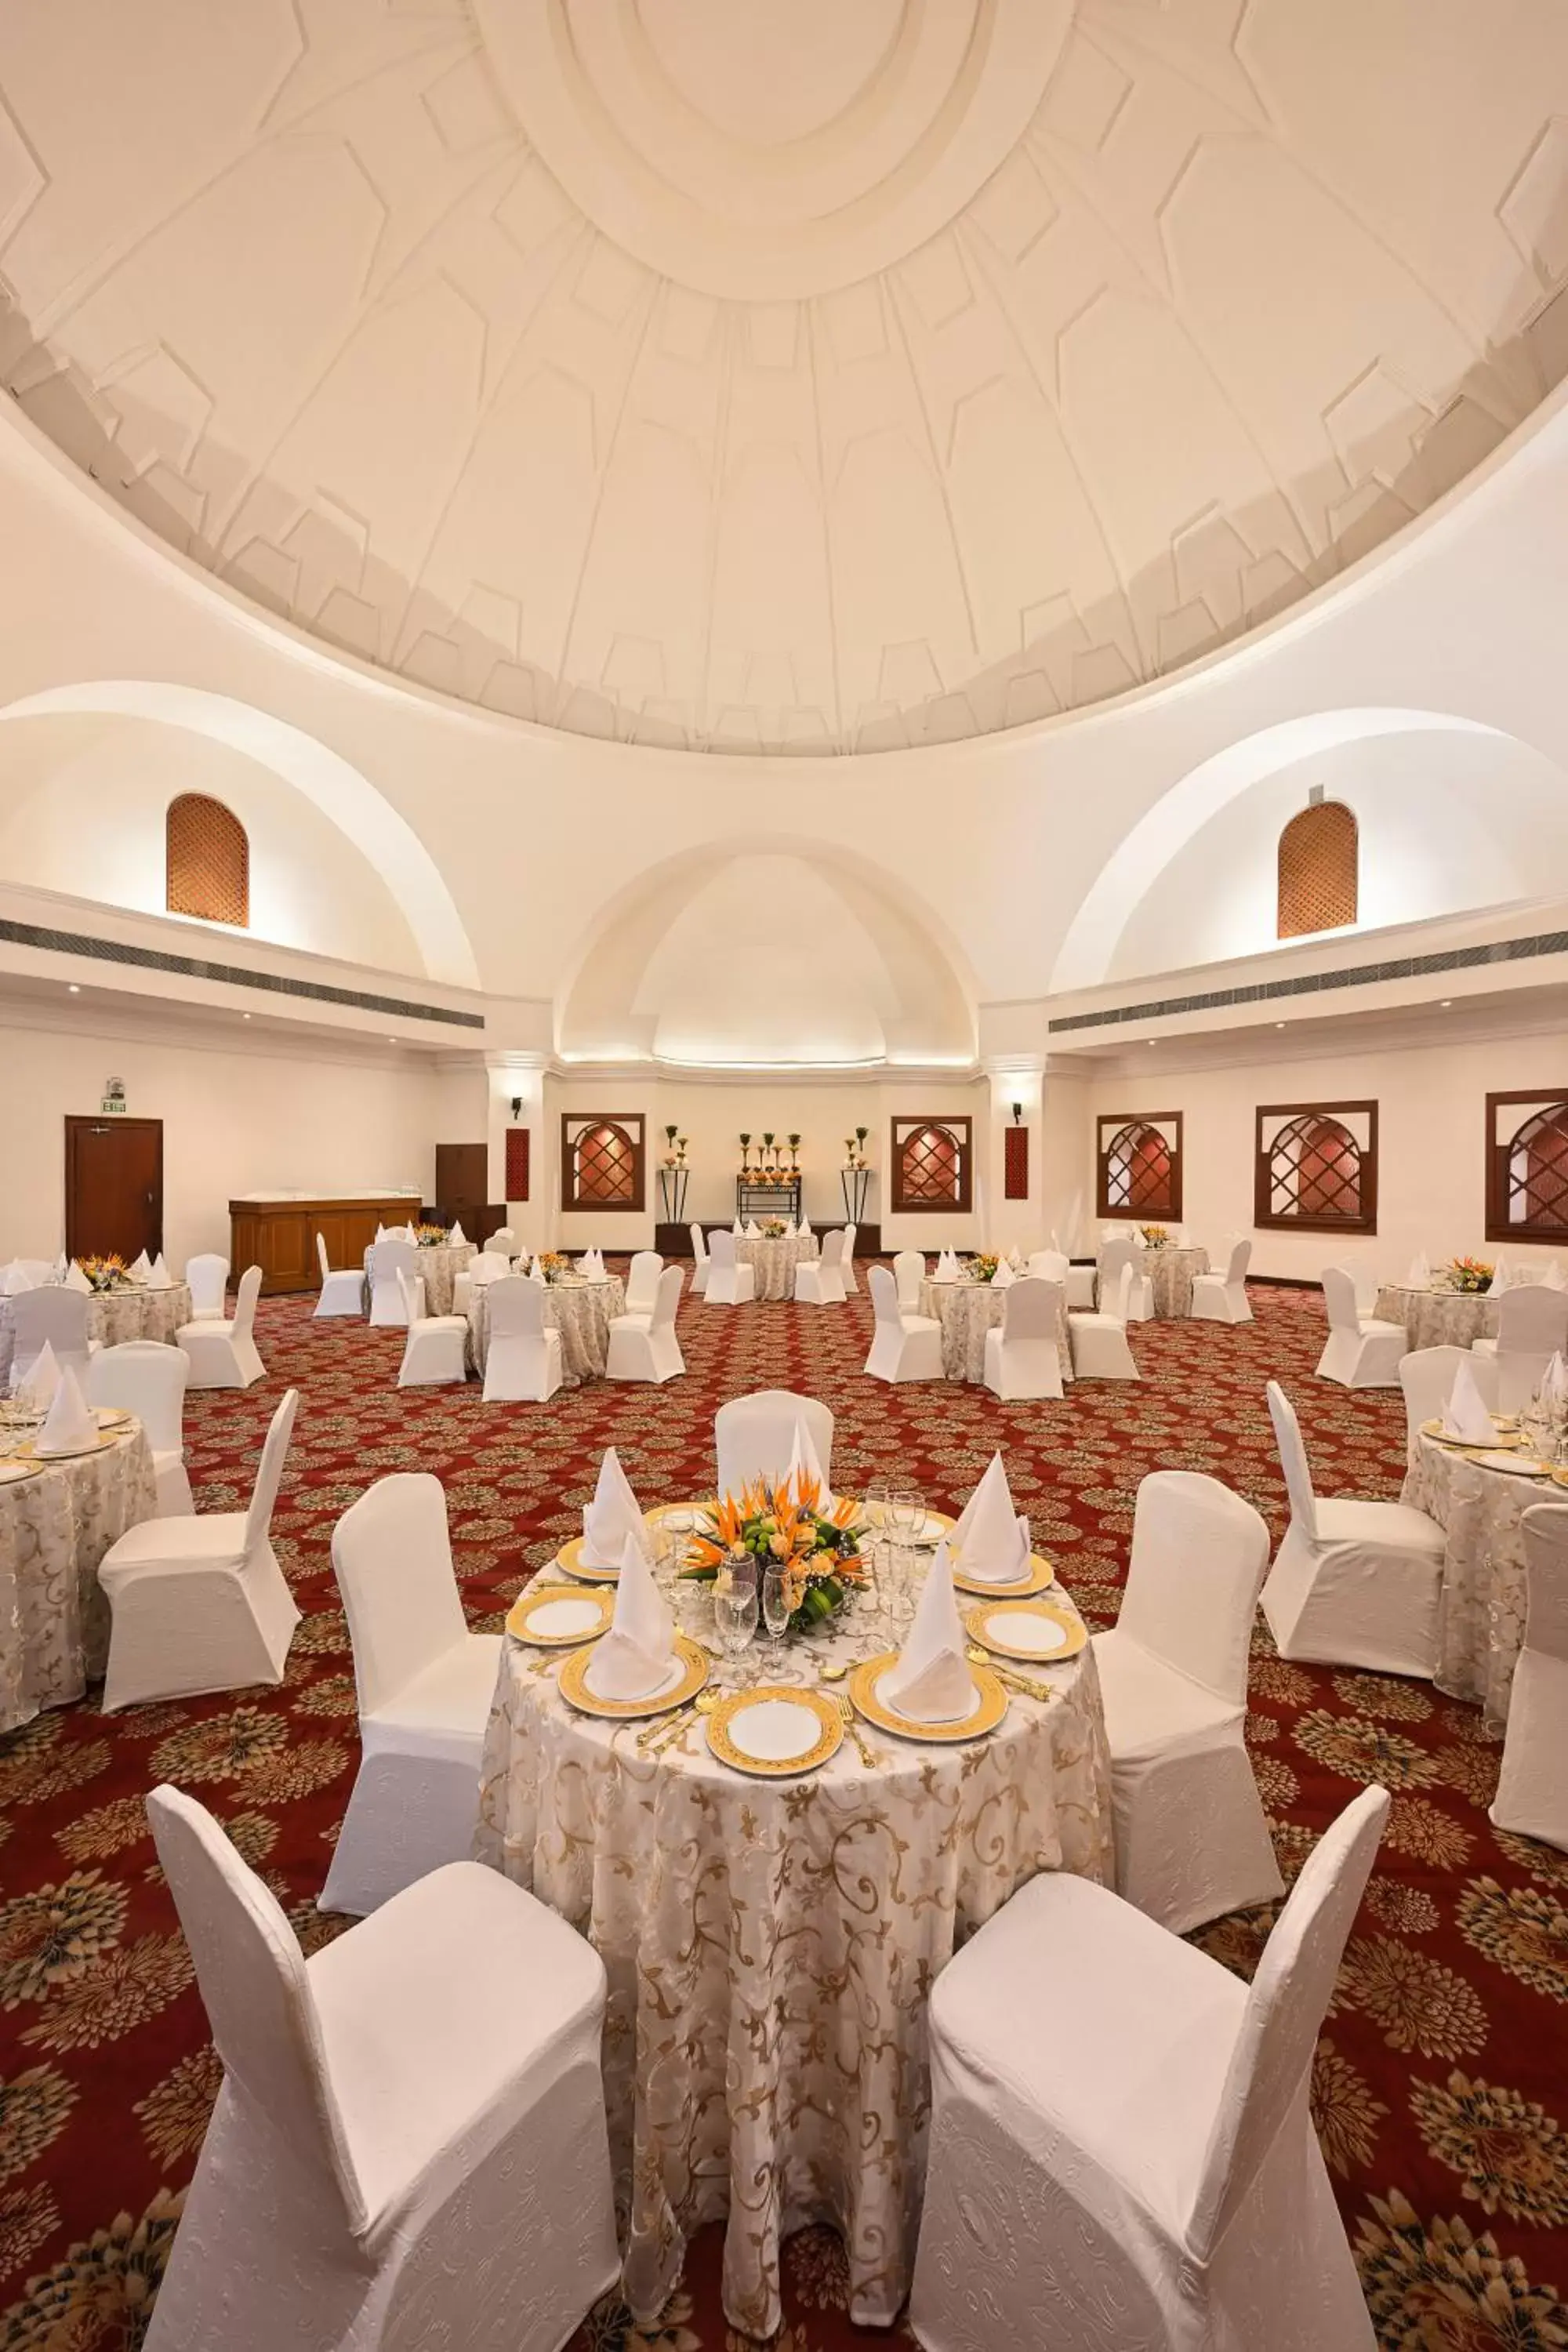 Banquet/Function facilities, Banquet Facilities in Ambassador, New Delhi - IHCL SeleQtions